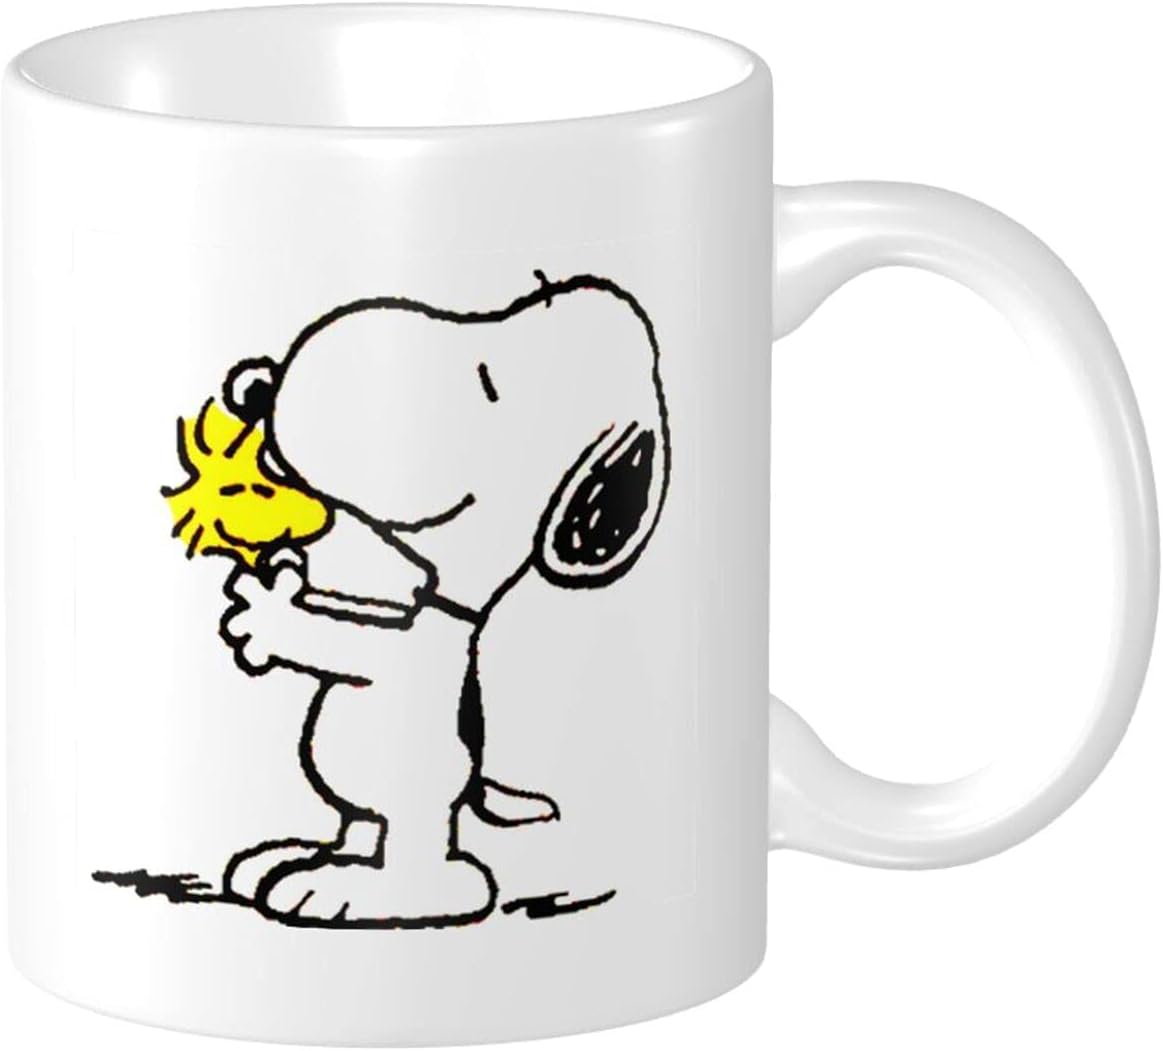 New in box Snoopy Peanuts M Ware MetLife advertising coffee tea mug cup 